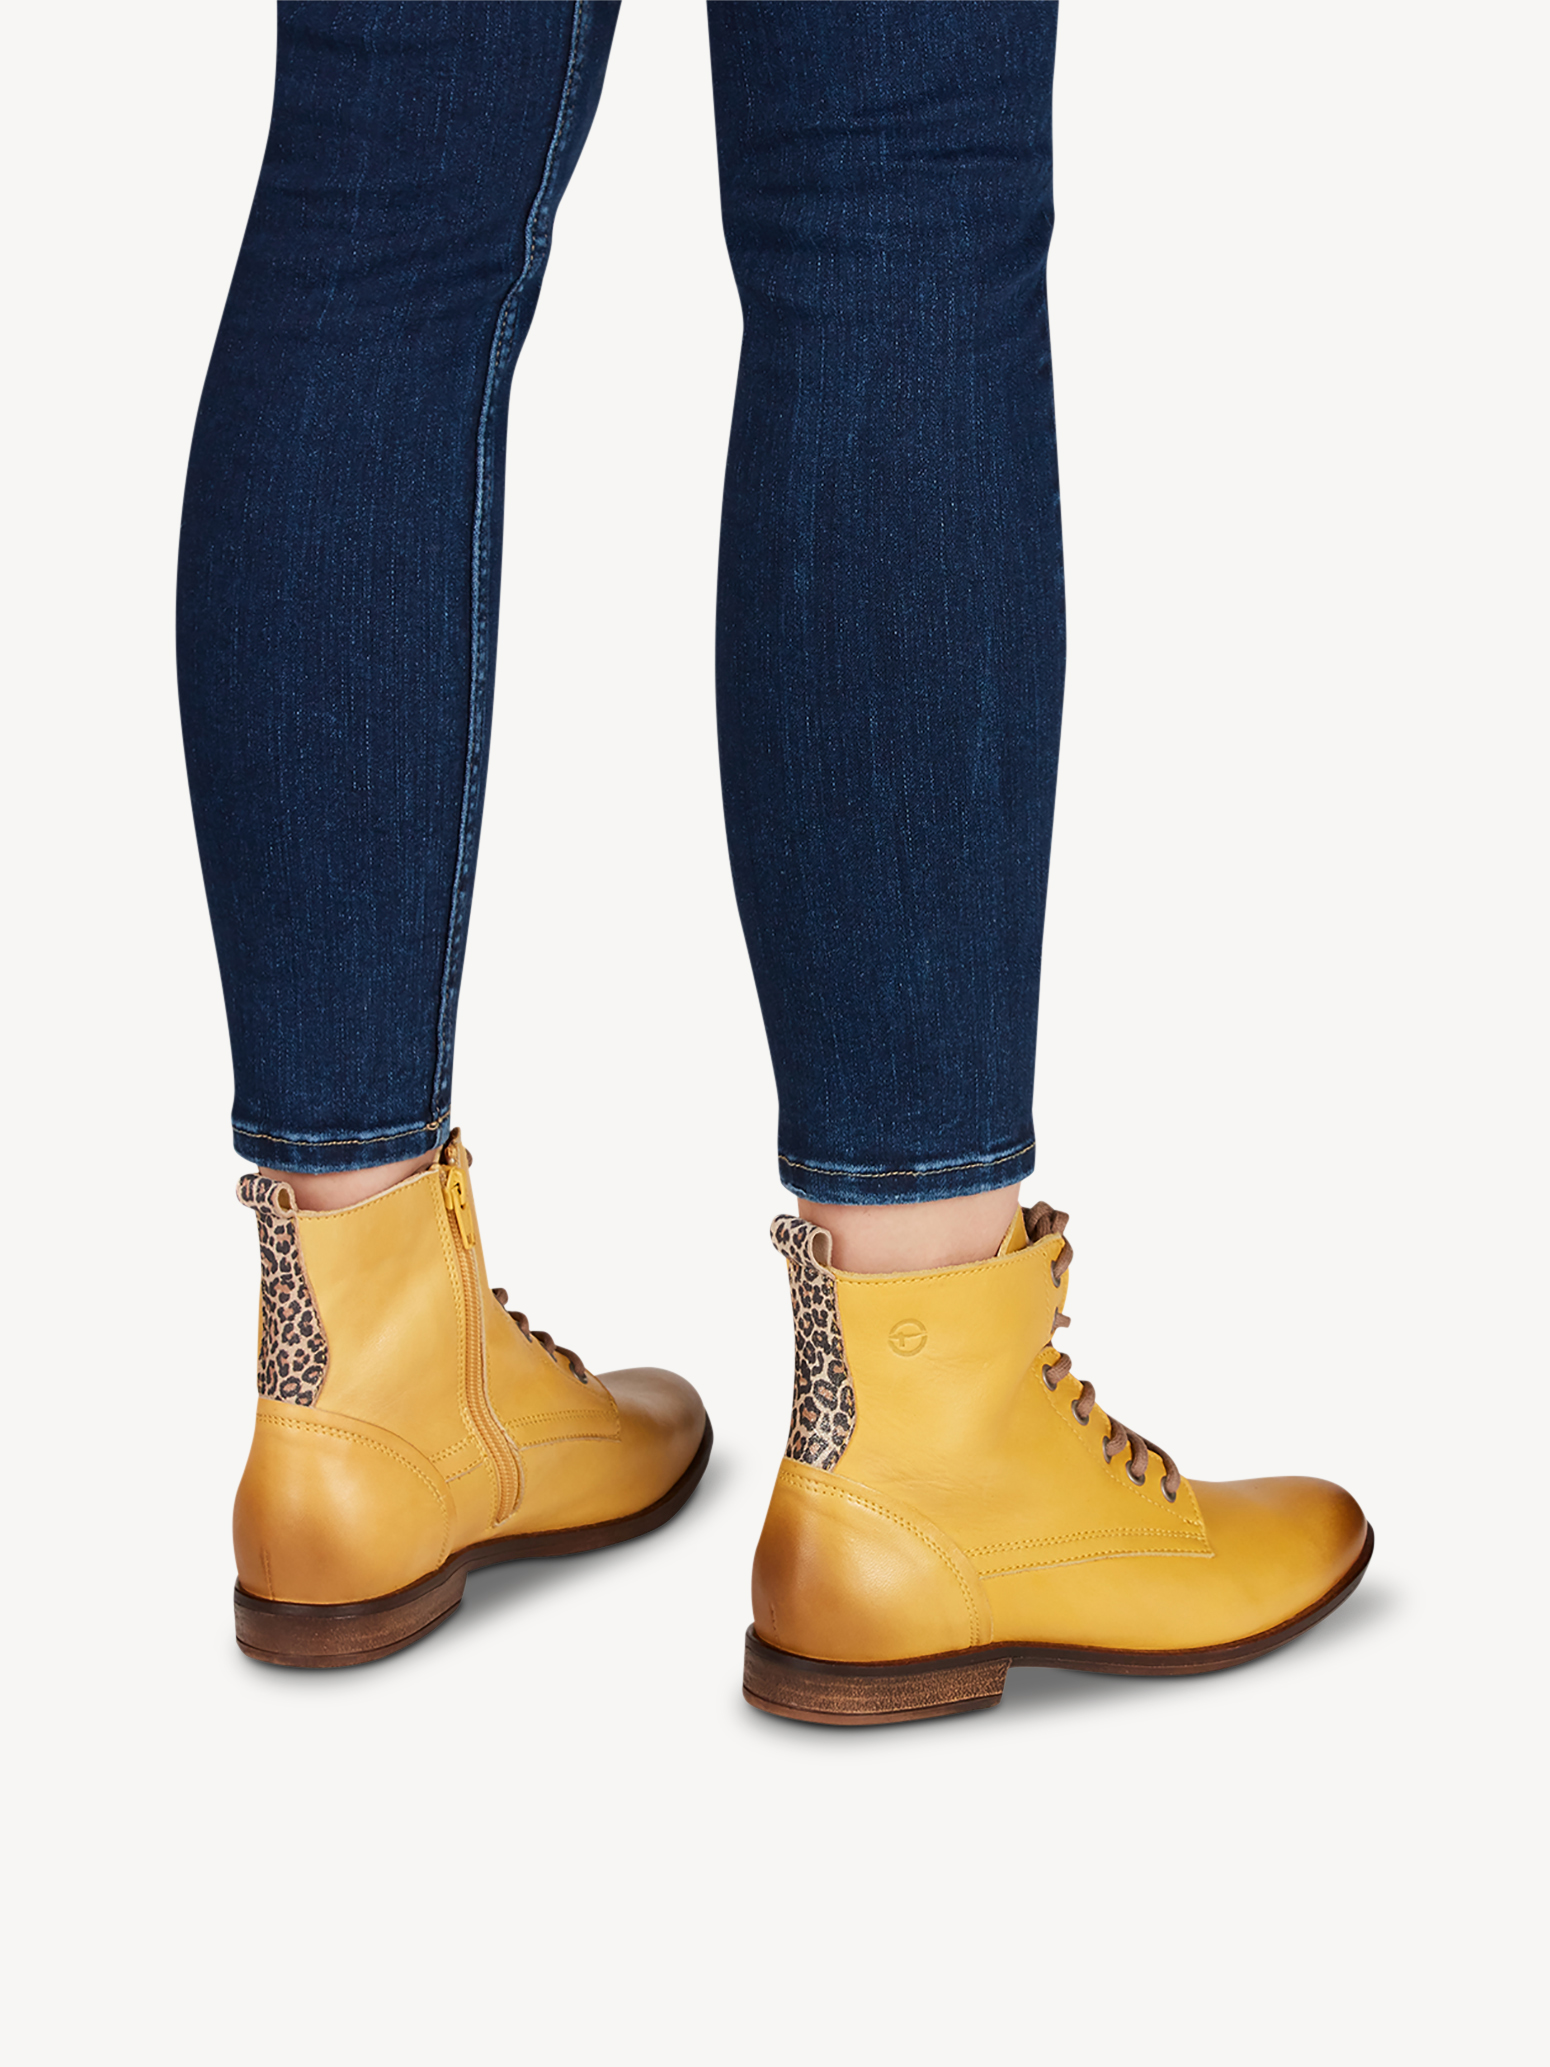 Ботинки женские (желтый) - изображение №1